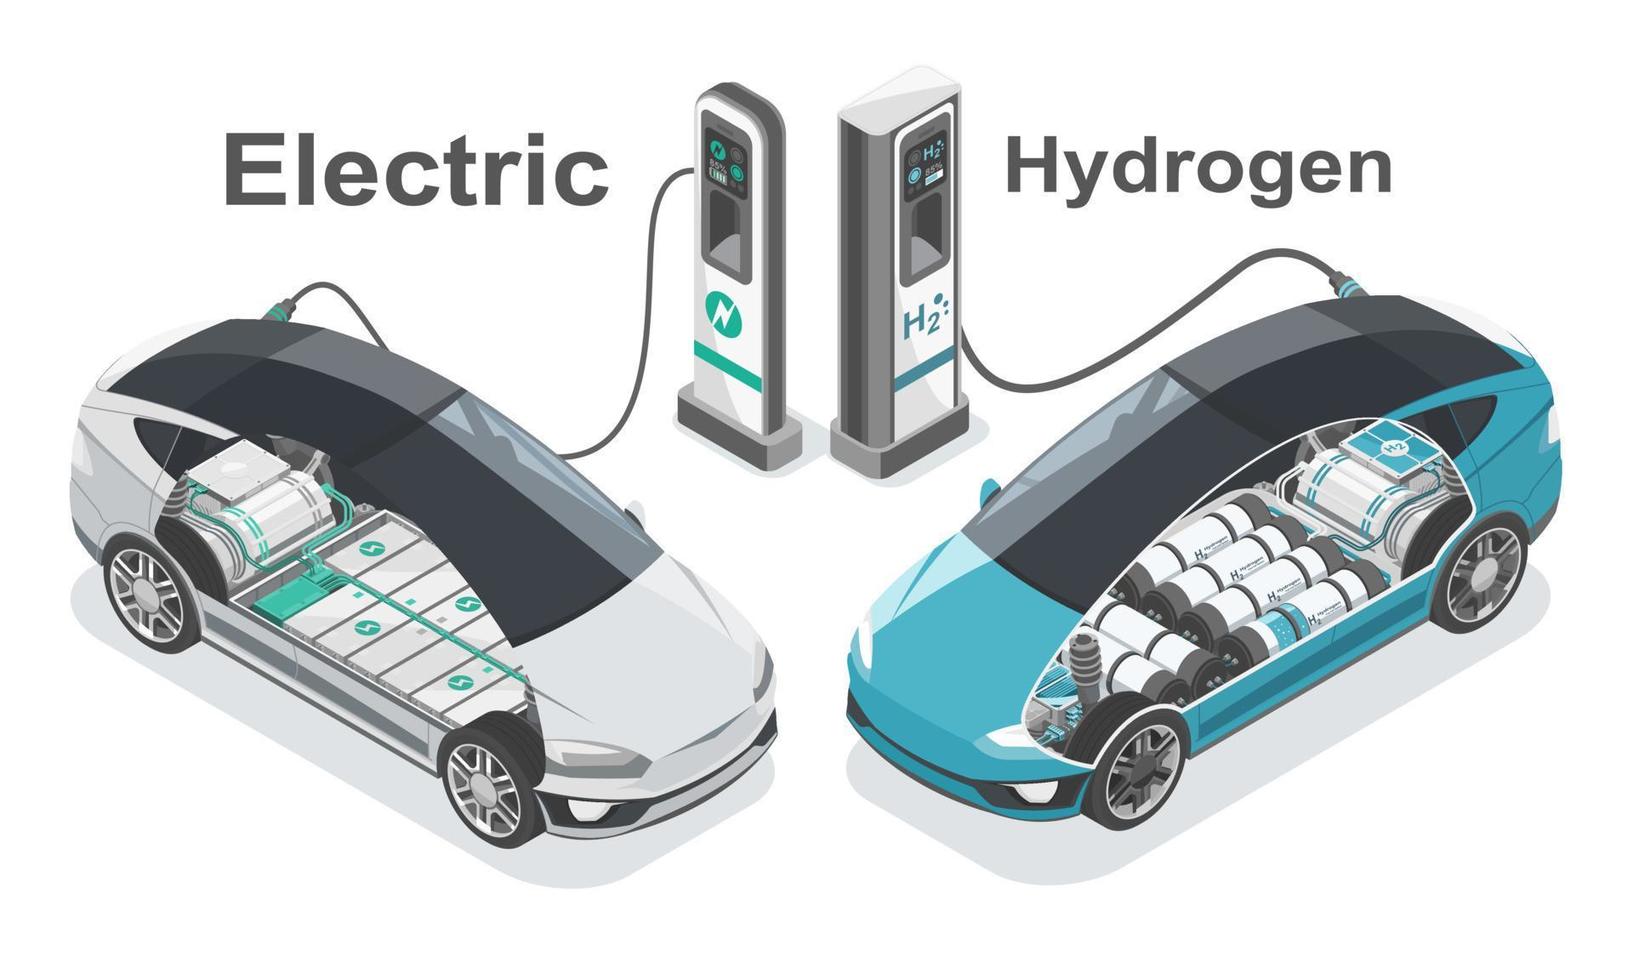 électrique voiture contre hydrogène carburant cellule ev futur La technologie pour zéro les émissions écologie nettoyer Puissance concept isométrique isolé vecteur